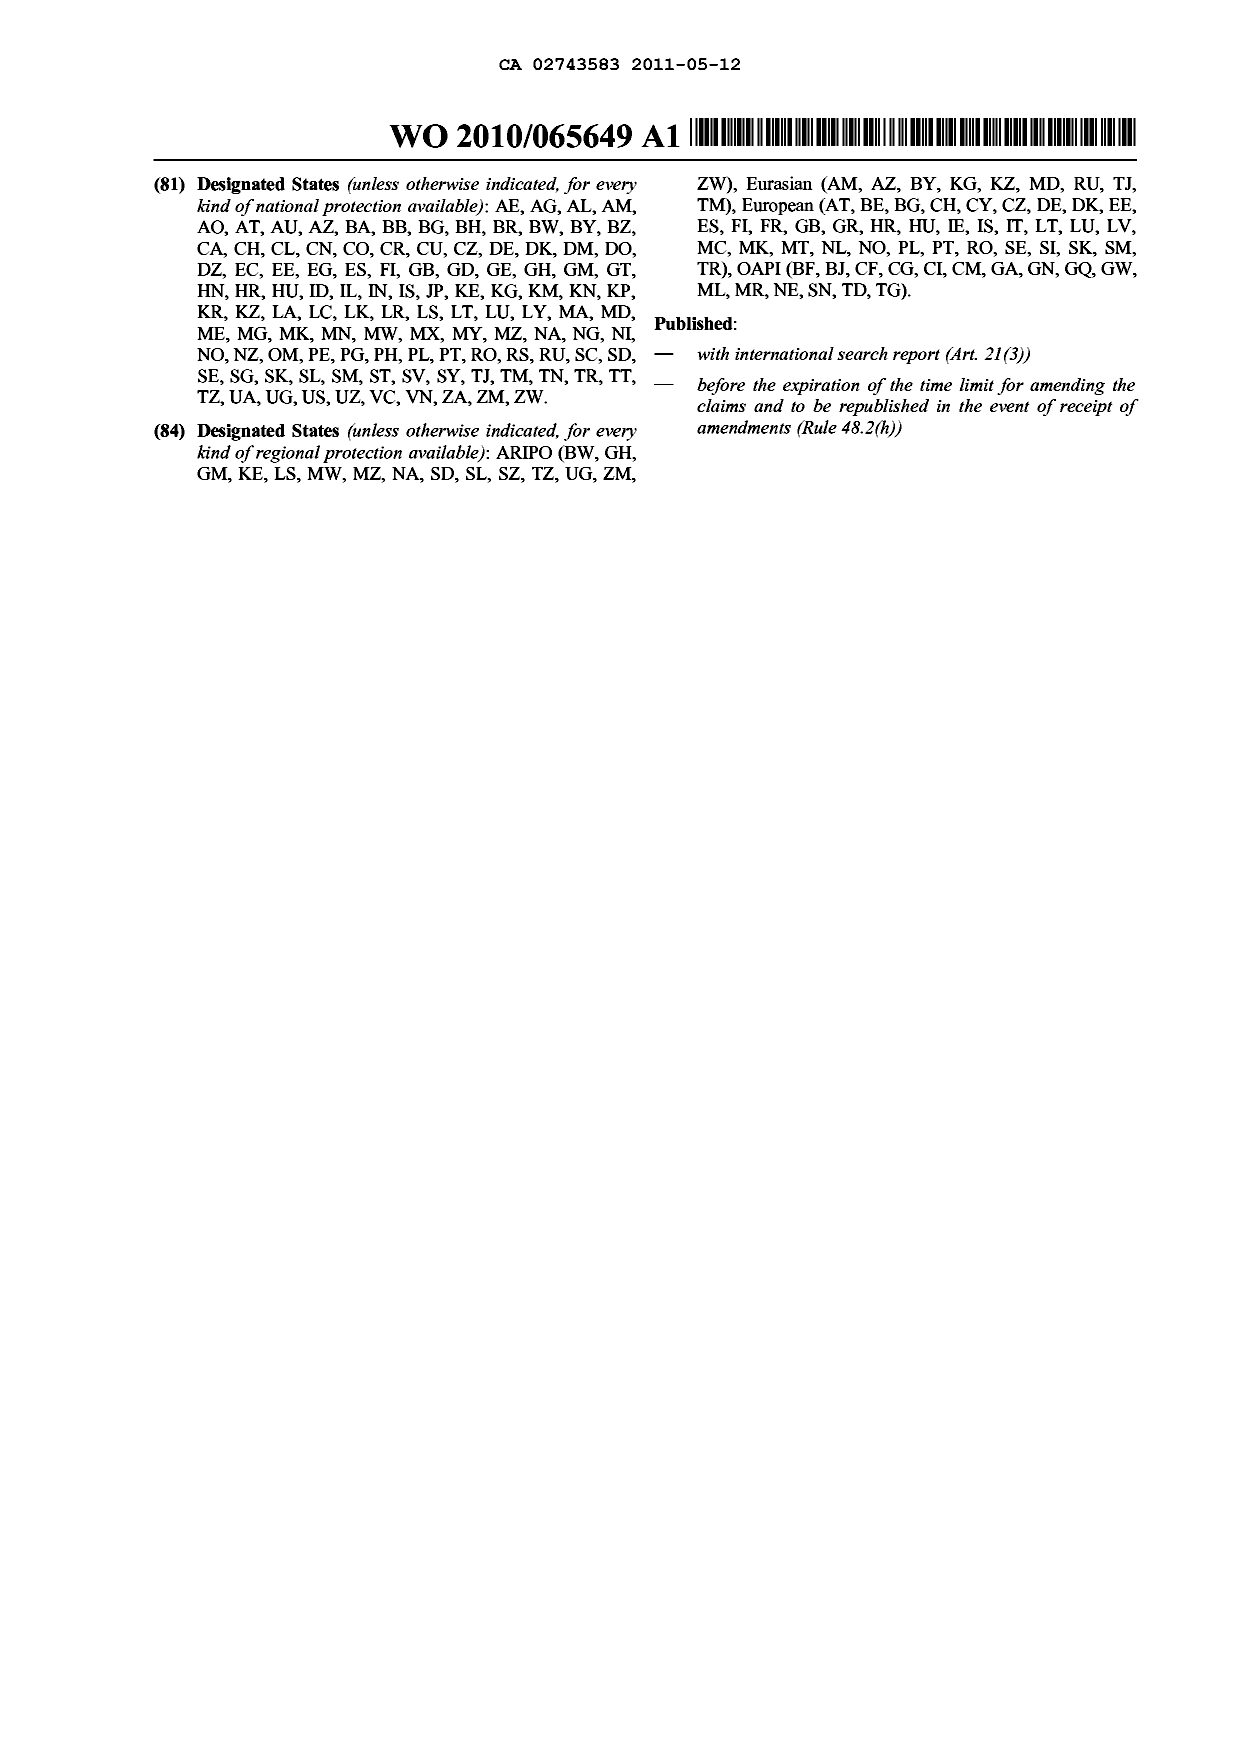 Document de brevet canadien 2743583. Abrégé 20101212. Image 2 de 2